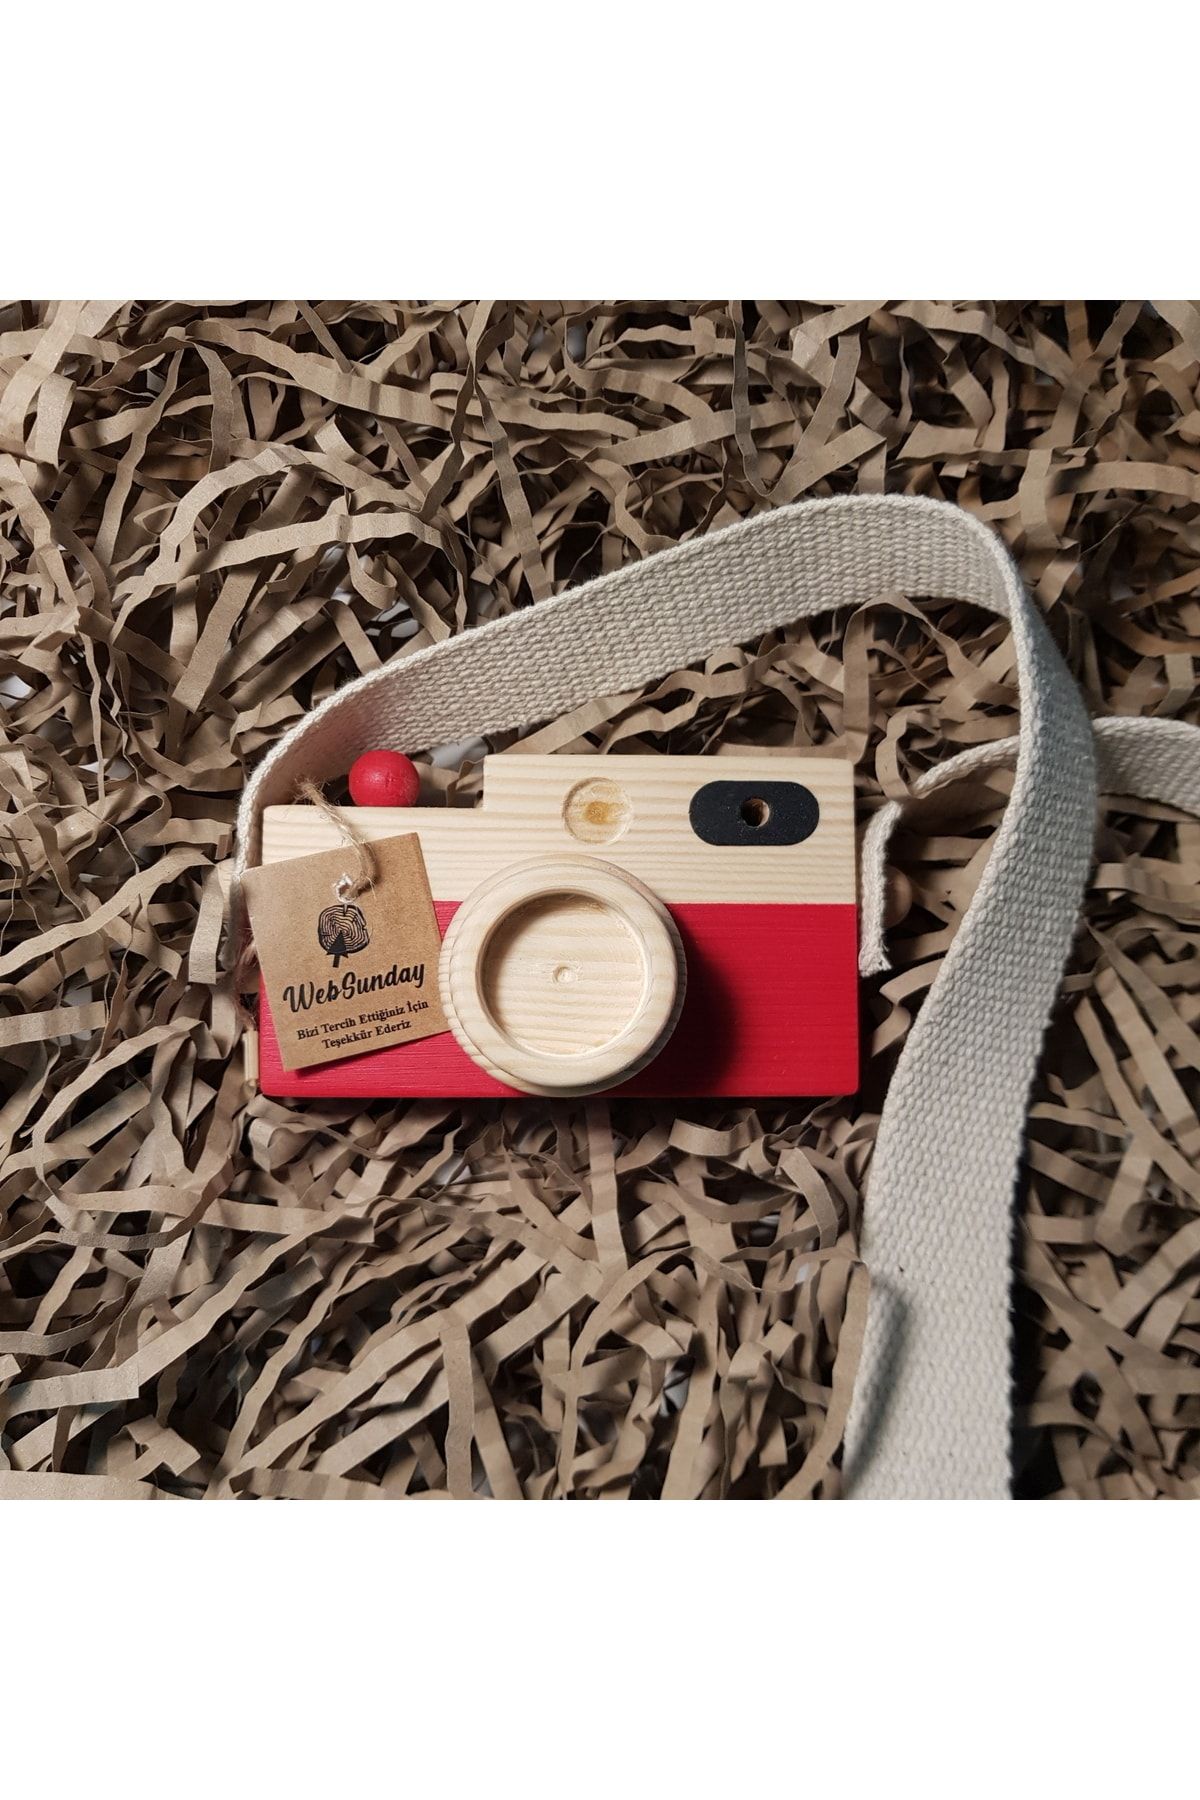 aswood Ahşap Oyuncak Fotoğraf Makinesi, Kız Erkek 0 - 3 Yaş Hediyelik Askılı Dekoratif Oyuncak -kırmızı